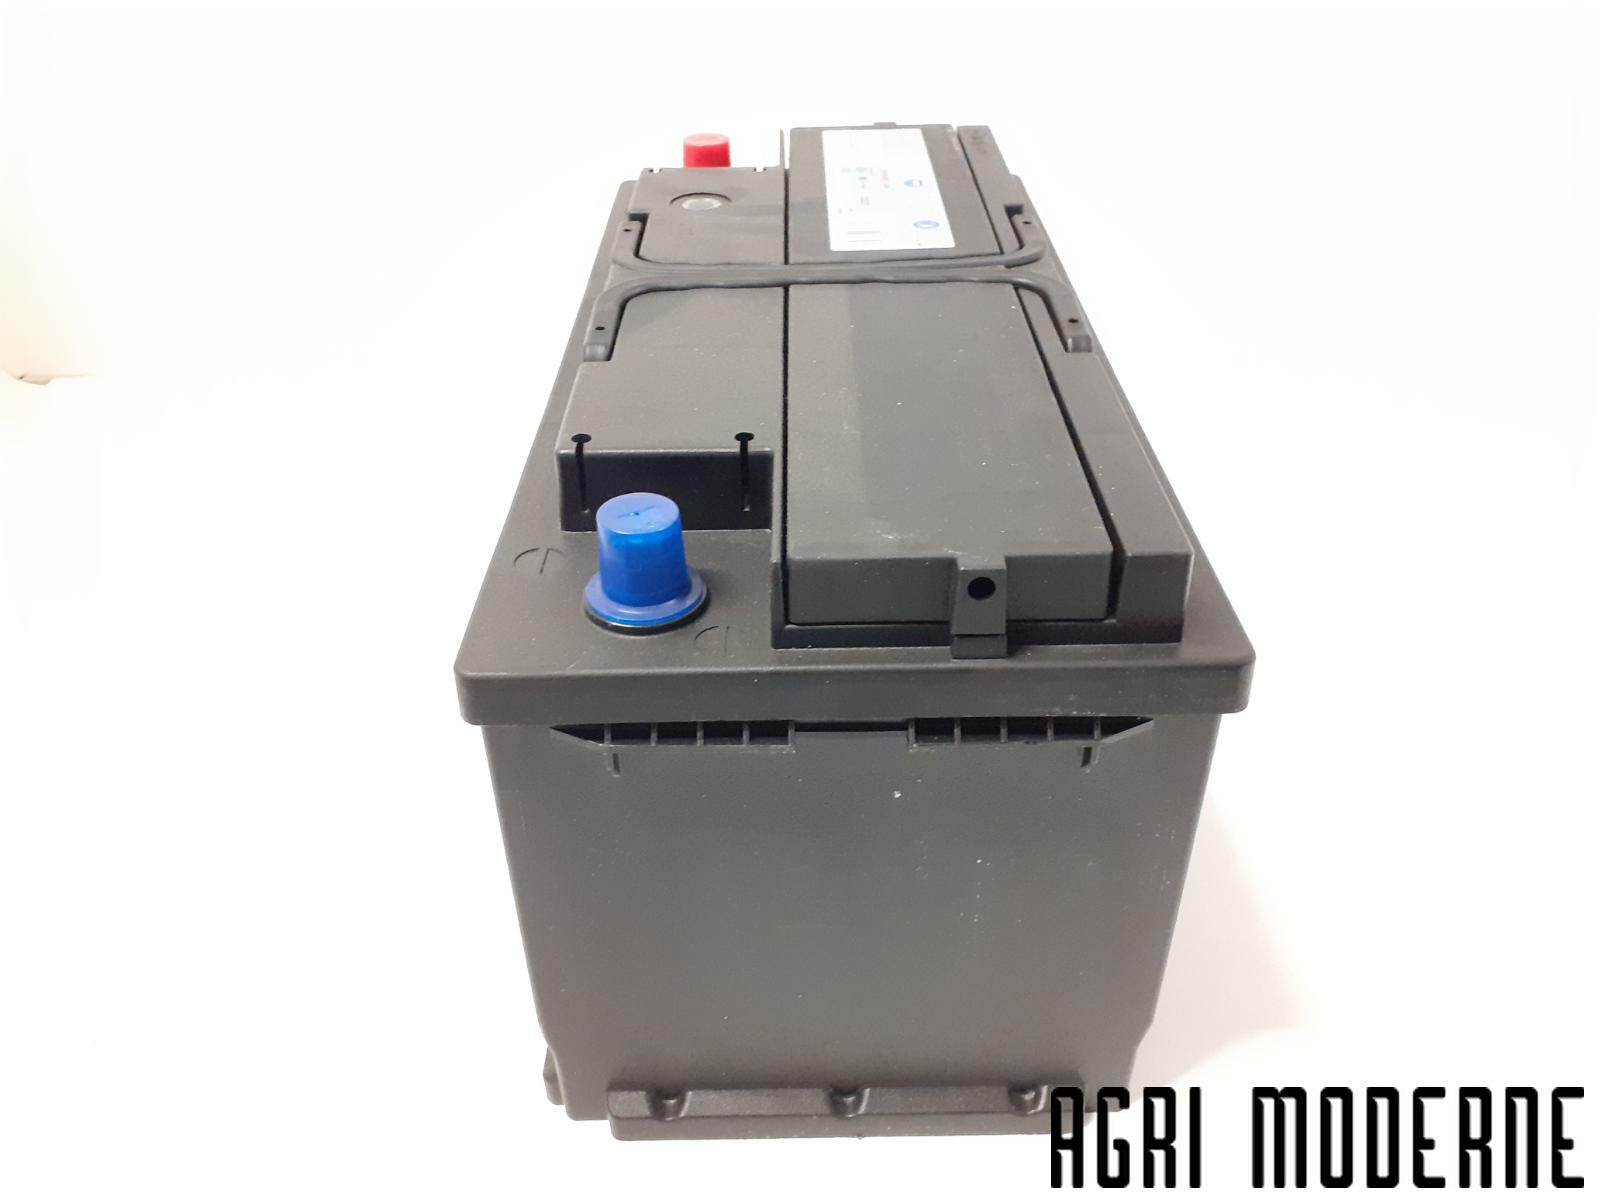 Batterie 12V 100Ah 850A – ATC Autoteile